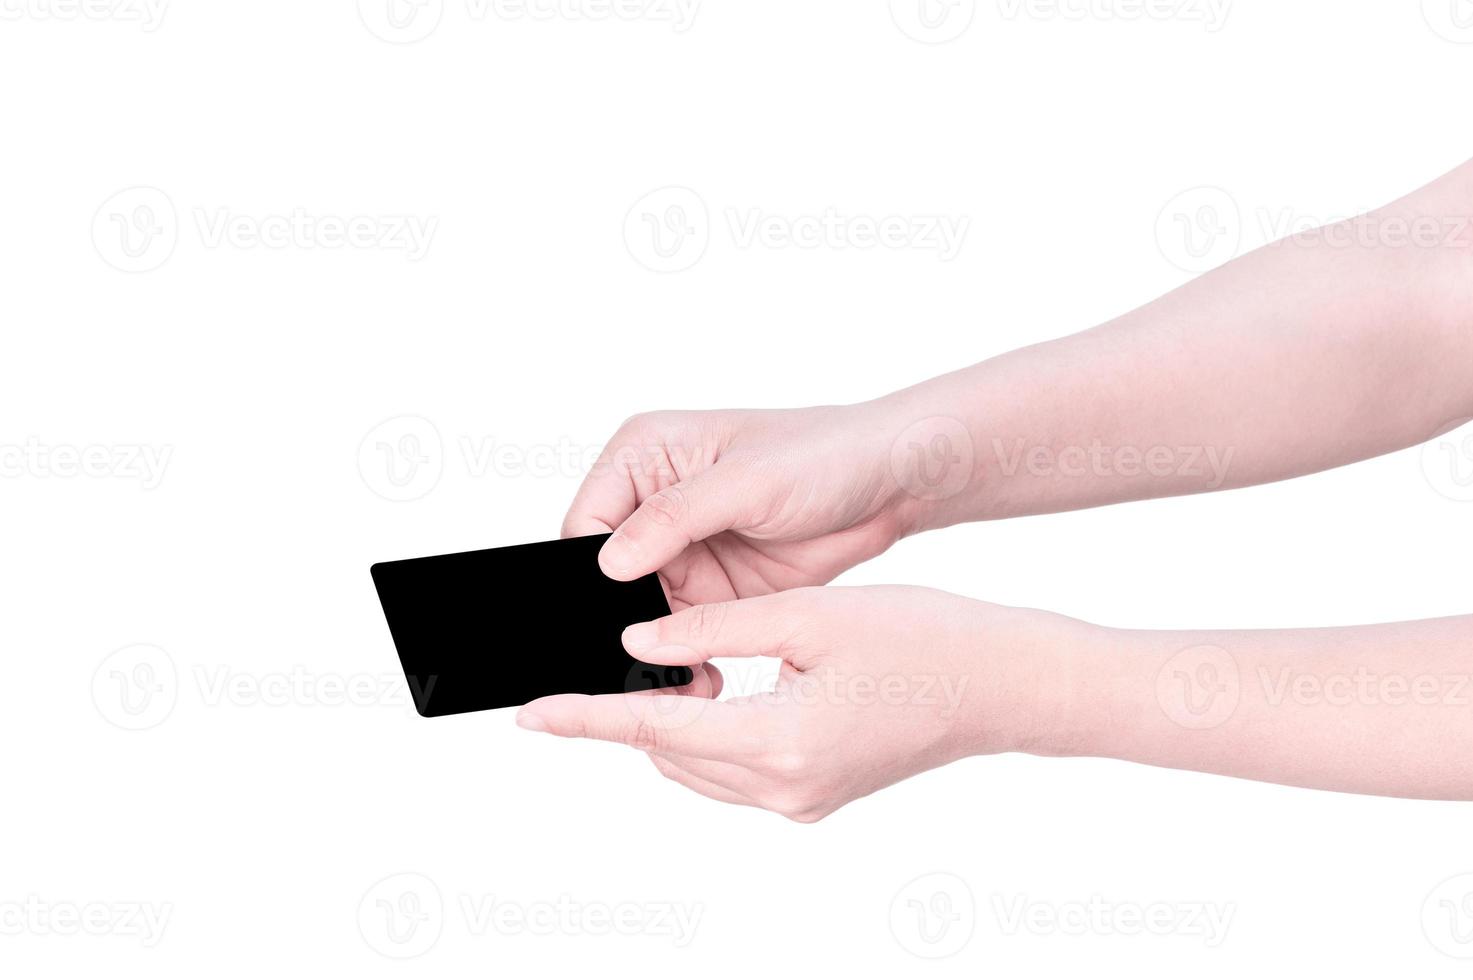 mão de jovem garota limpa da ásia segurando um modelo de cartão de papel marrom kraft em branco isolado no fundo branco, traçado de recorte, fechar, simular, cortar foto